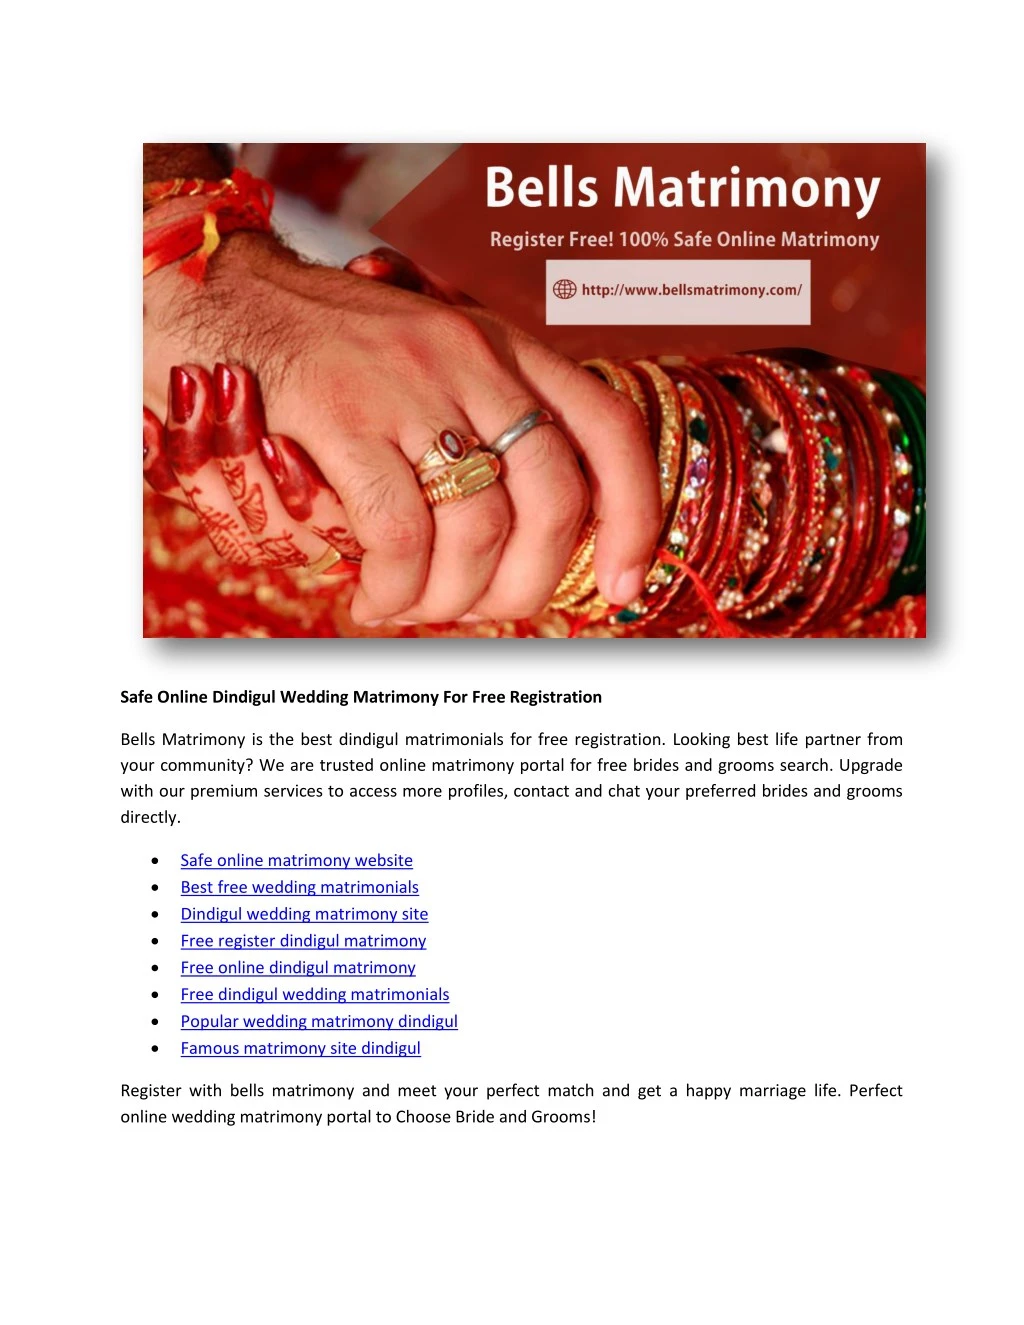 safe online dindigul wedding matrimony for free